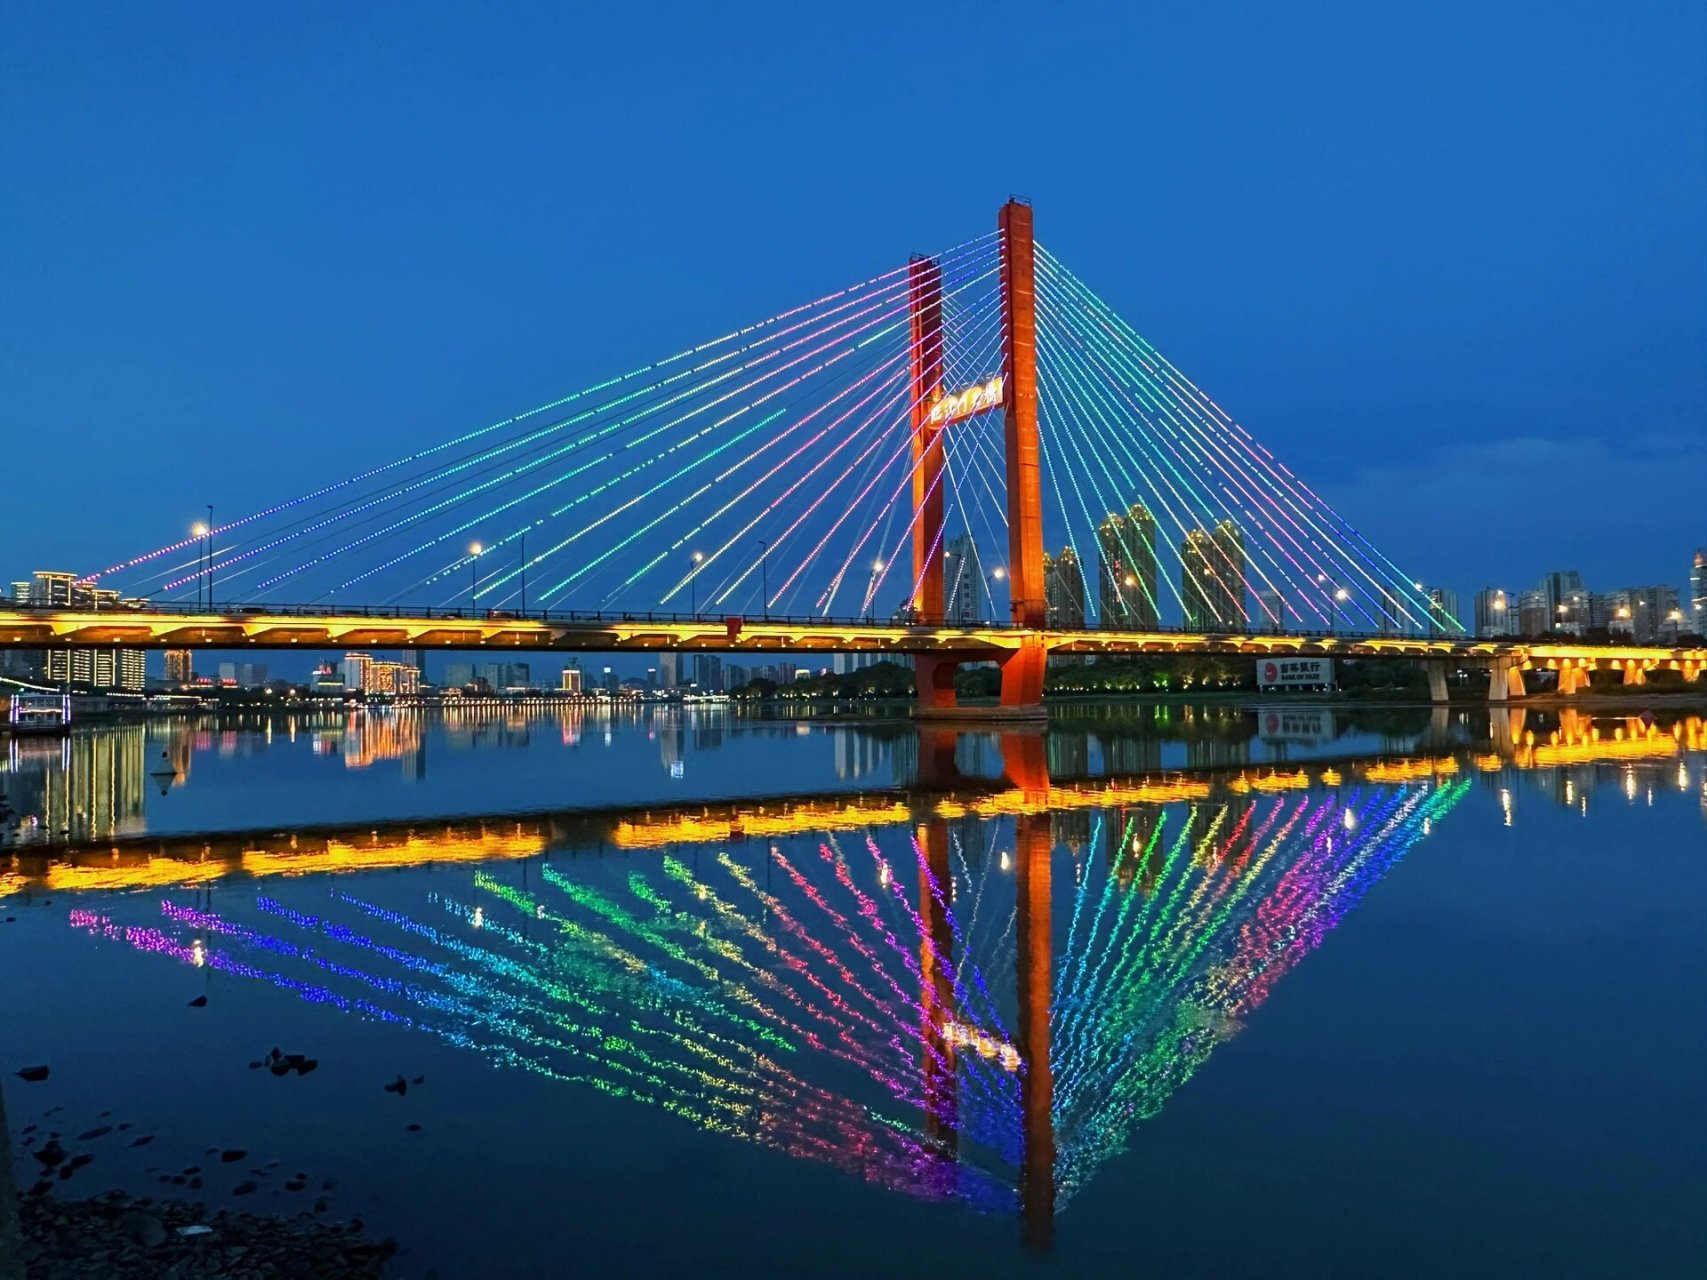 吉林市环山大桥设计图图片